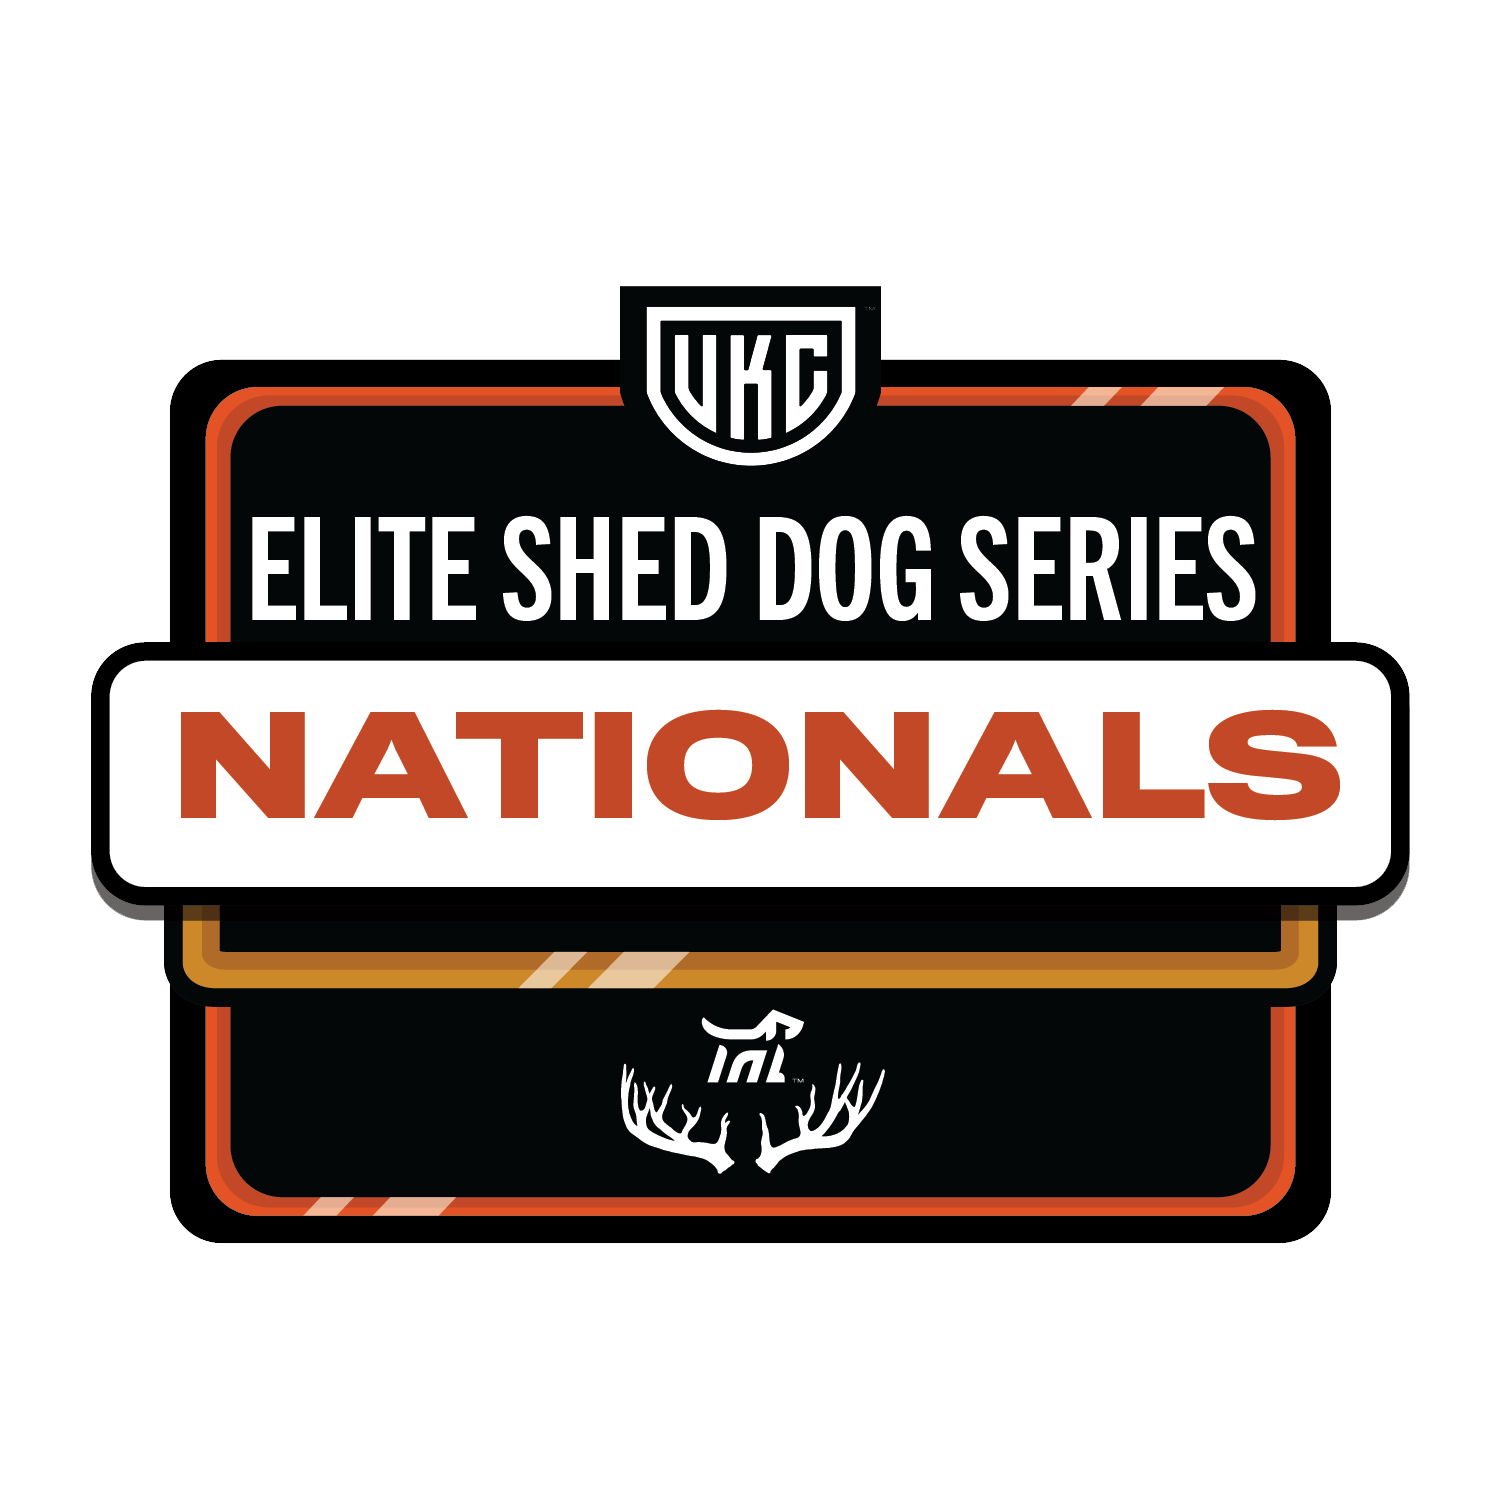 Shed Dog Nationals - UKC